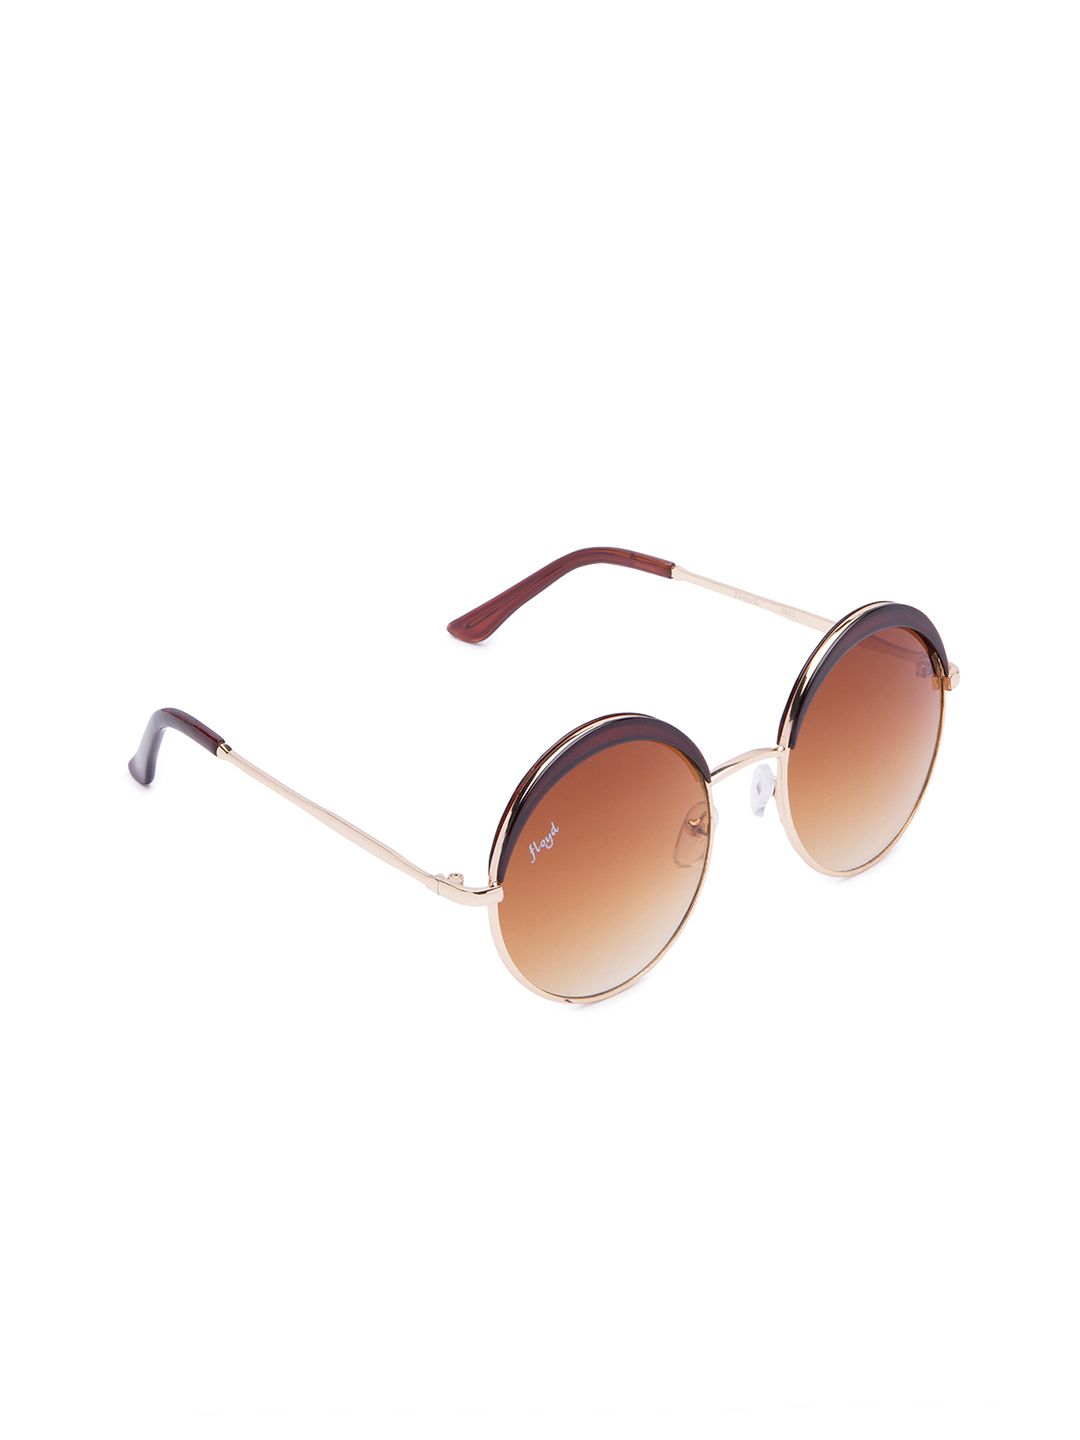 Floyd Unisex Round Sunglasses Price in India